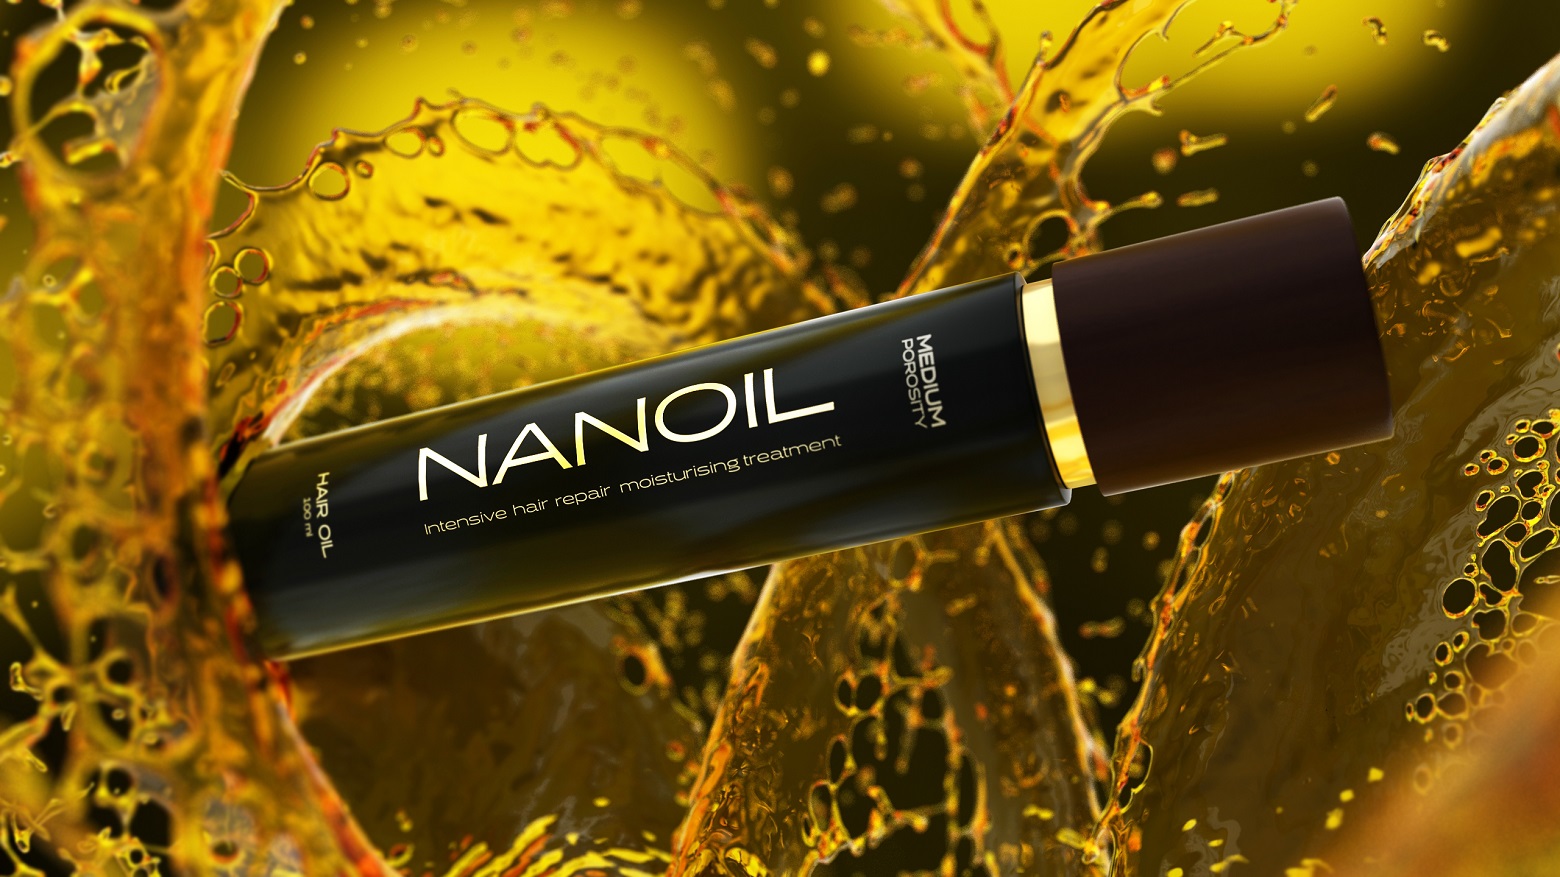 Dwa kroki do pięknych włosów. Poznaj siłę natury z Nanoil!